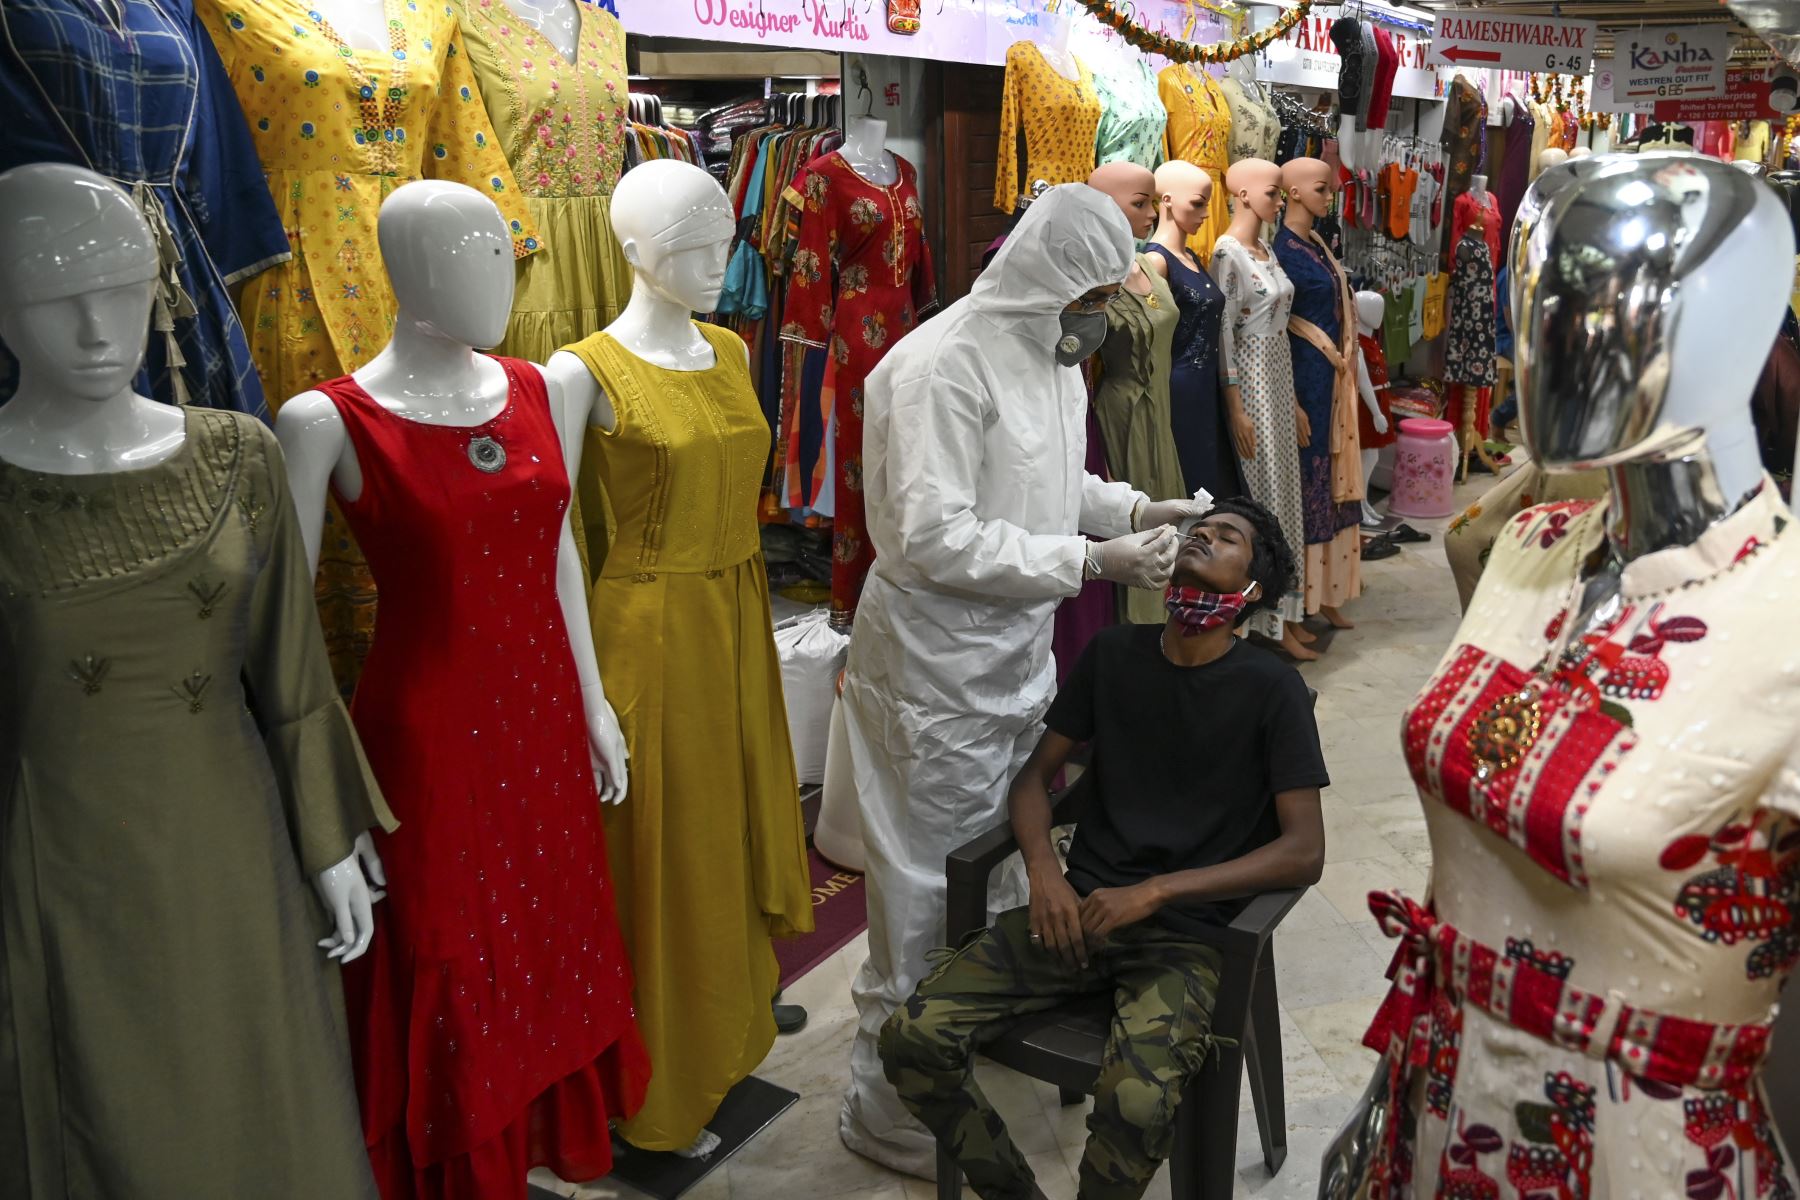 Un trabajador de la salud que usa equipo de protección toma una muestra de hisopo de un hombre durante un examen médico para el coronavirus  en un mercado mayorista de ropa en Mumbai. Los casos de coronavirus en India superaron los nueve millones.
Foto: AFP